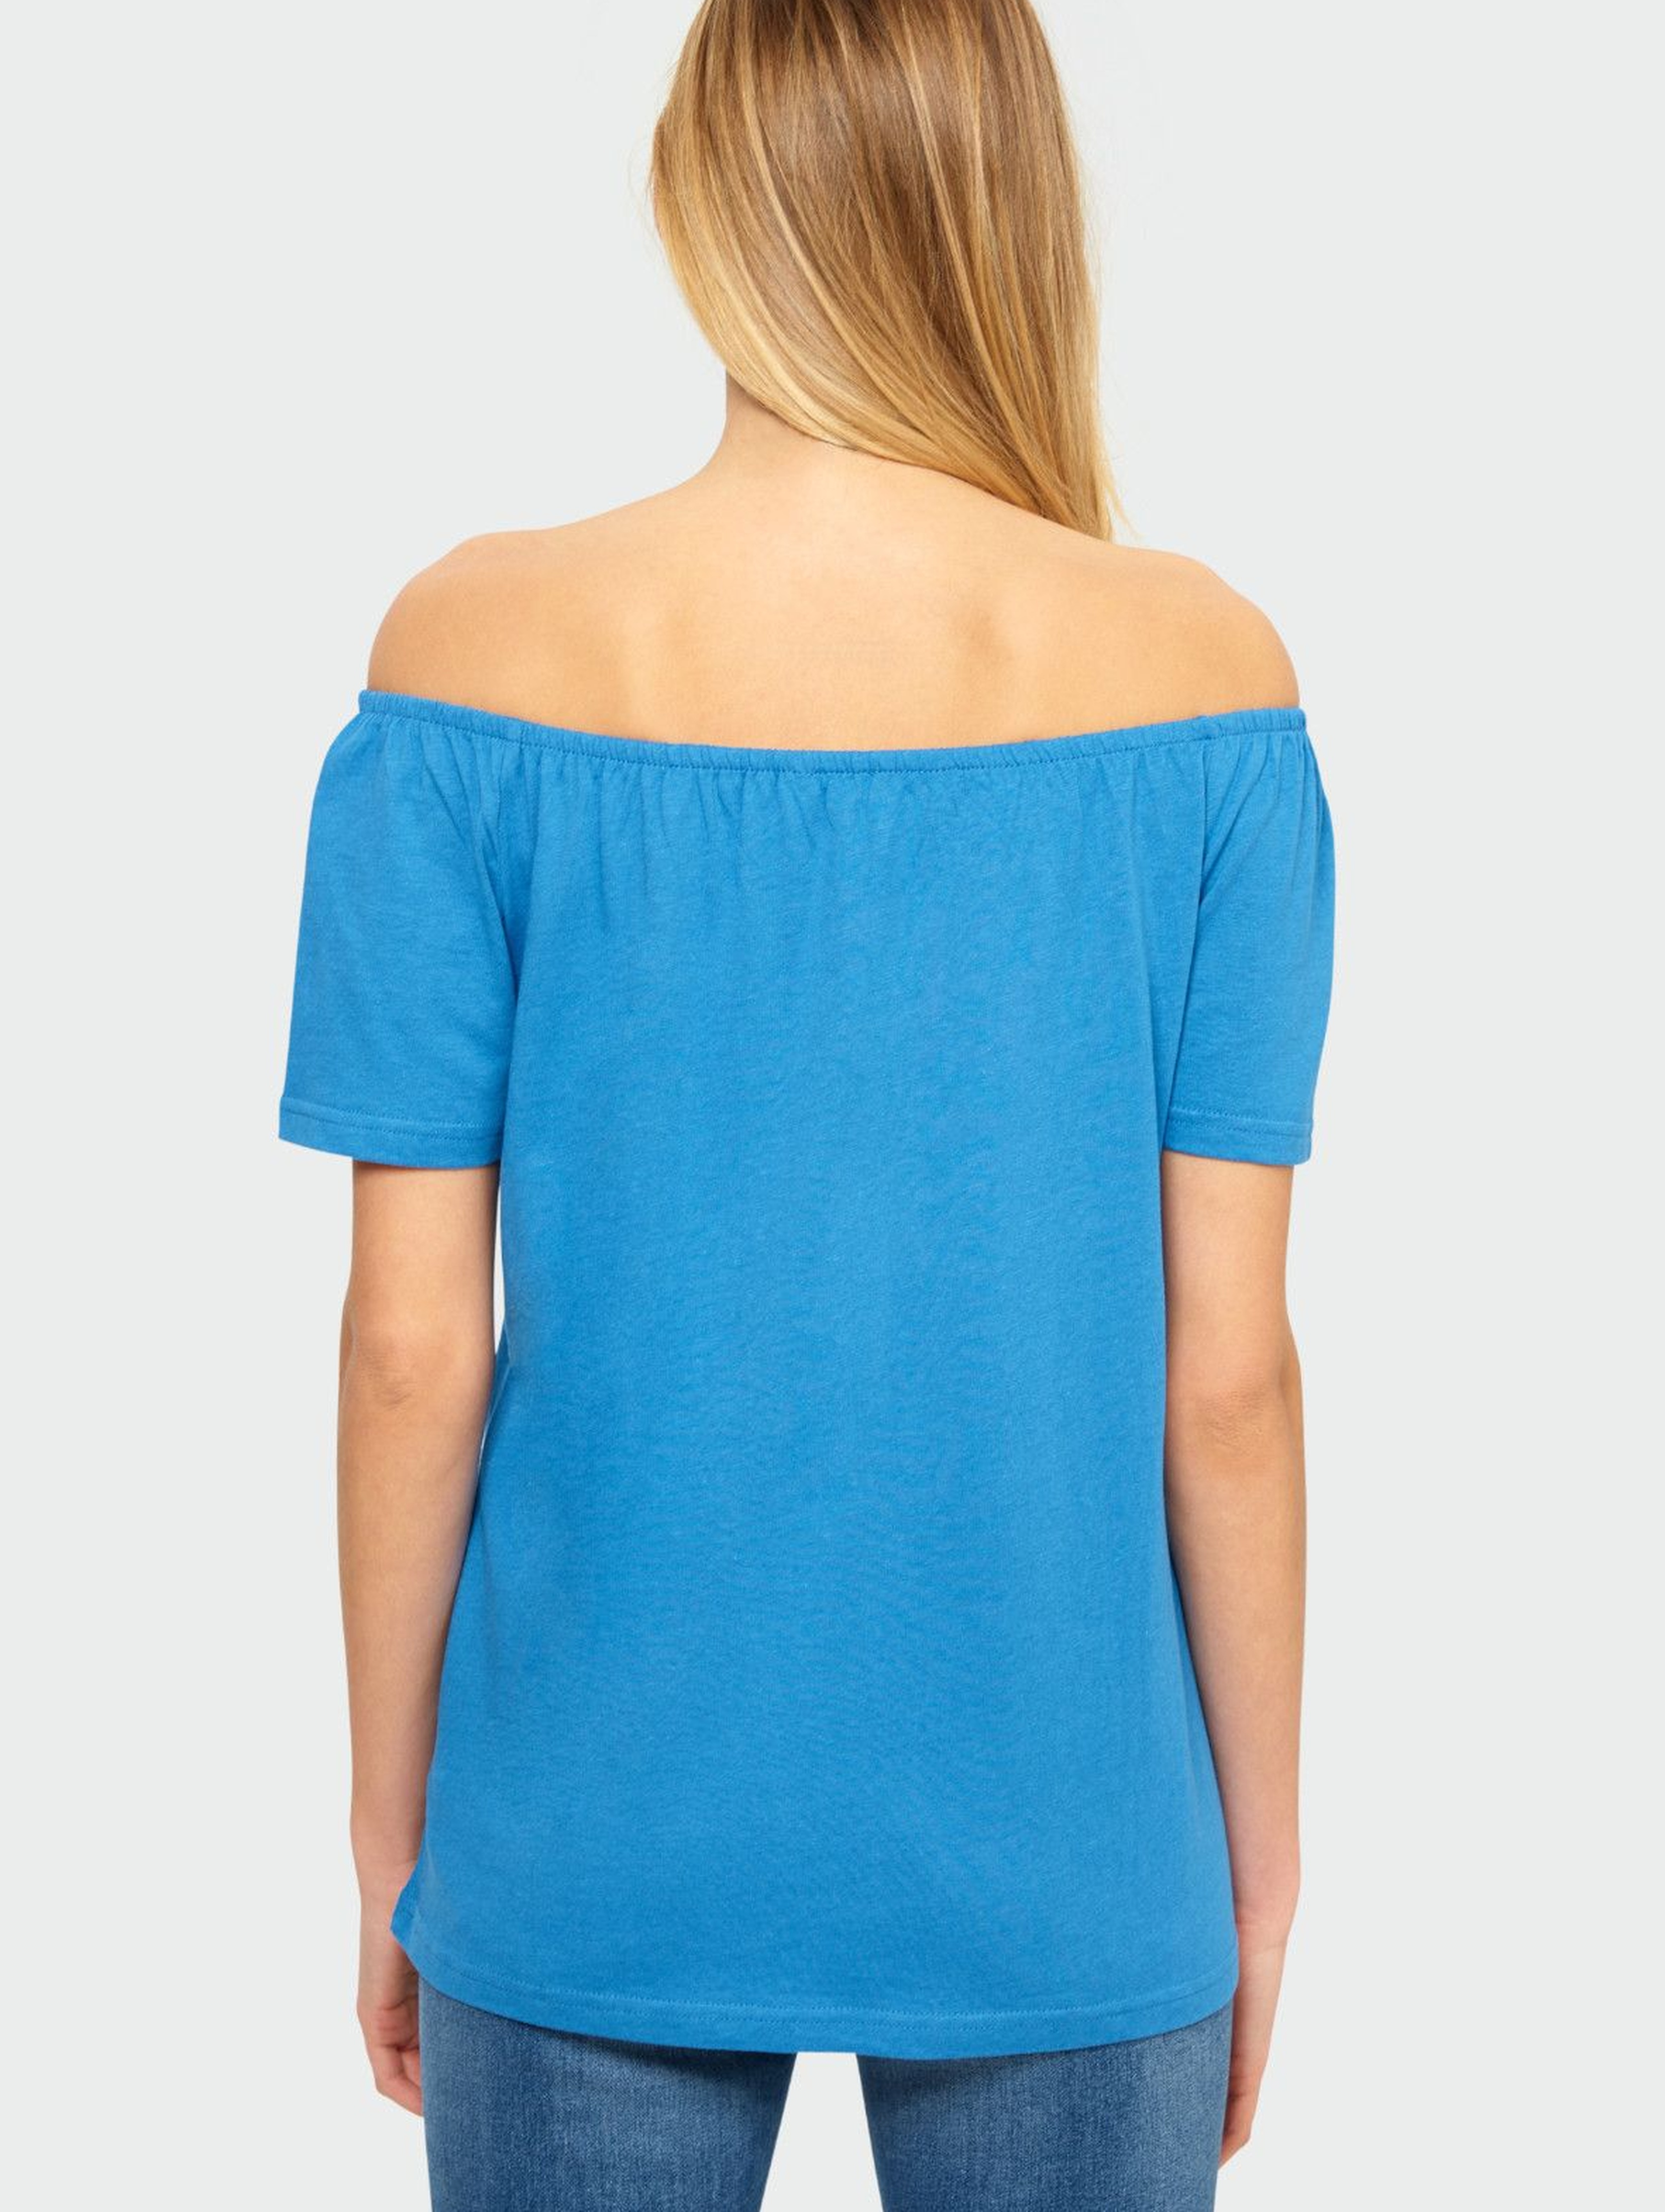 Niebieska bluzka damska z odkrytymi ramionami- niebieska